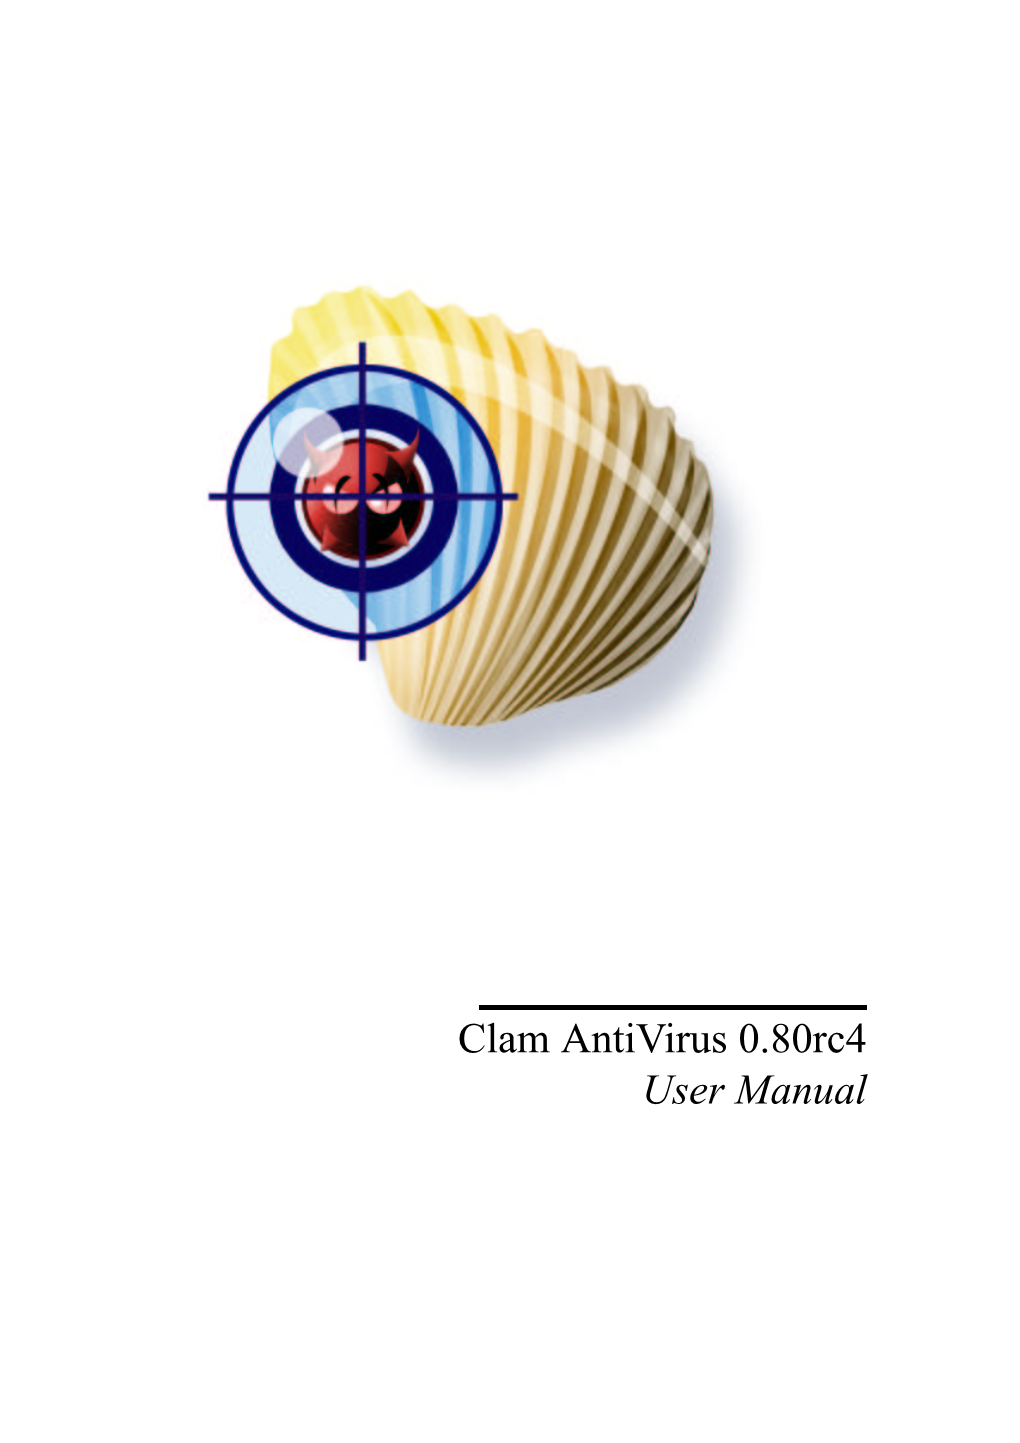 Clam Antivirus 0.80Rc4 User Manual Contents 1